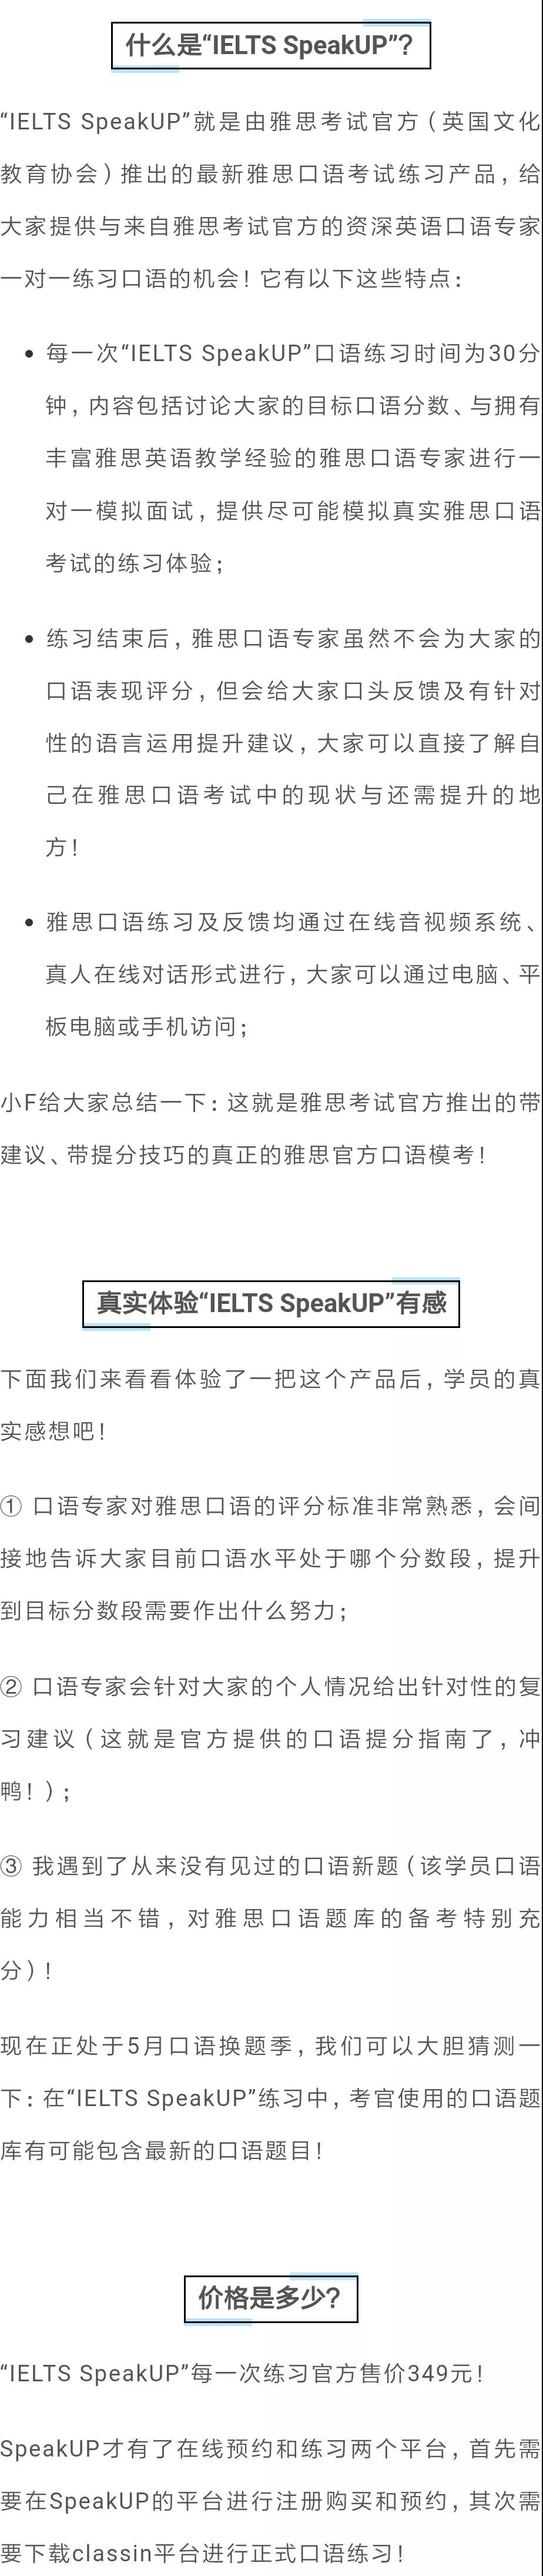 雅思口语口语新产品“IELTS SpeakUP”